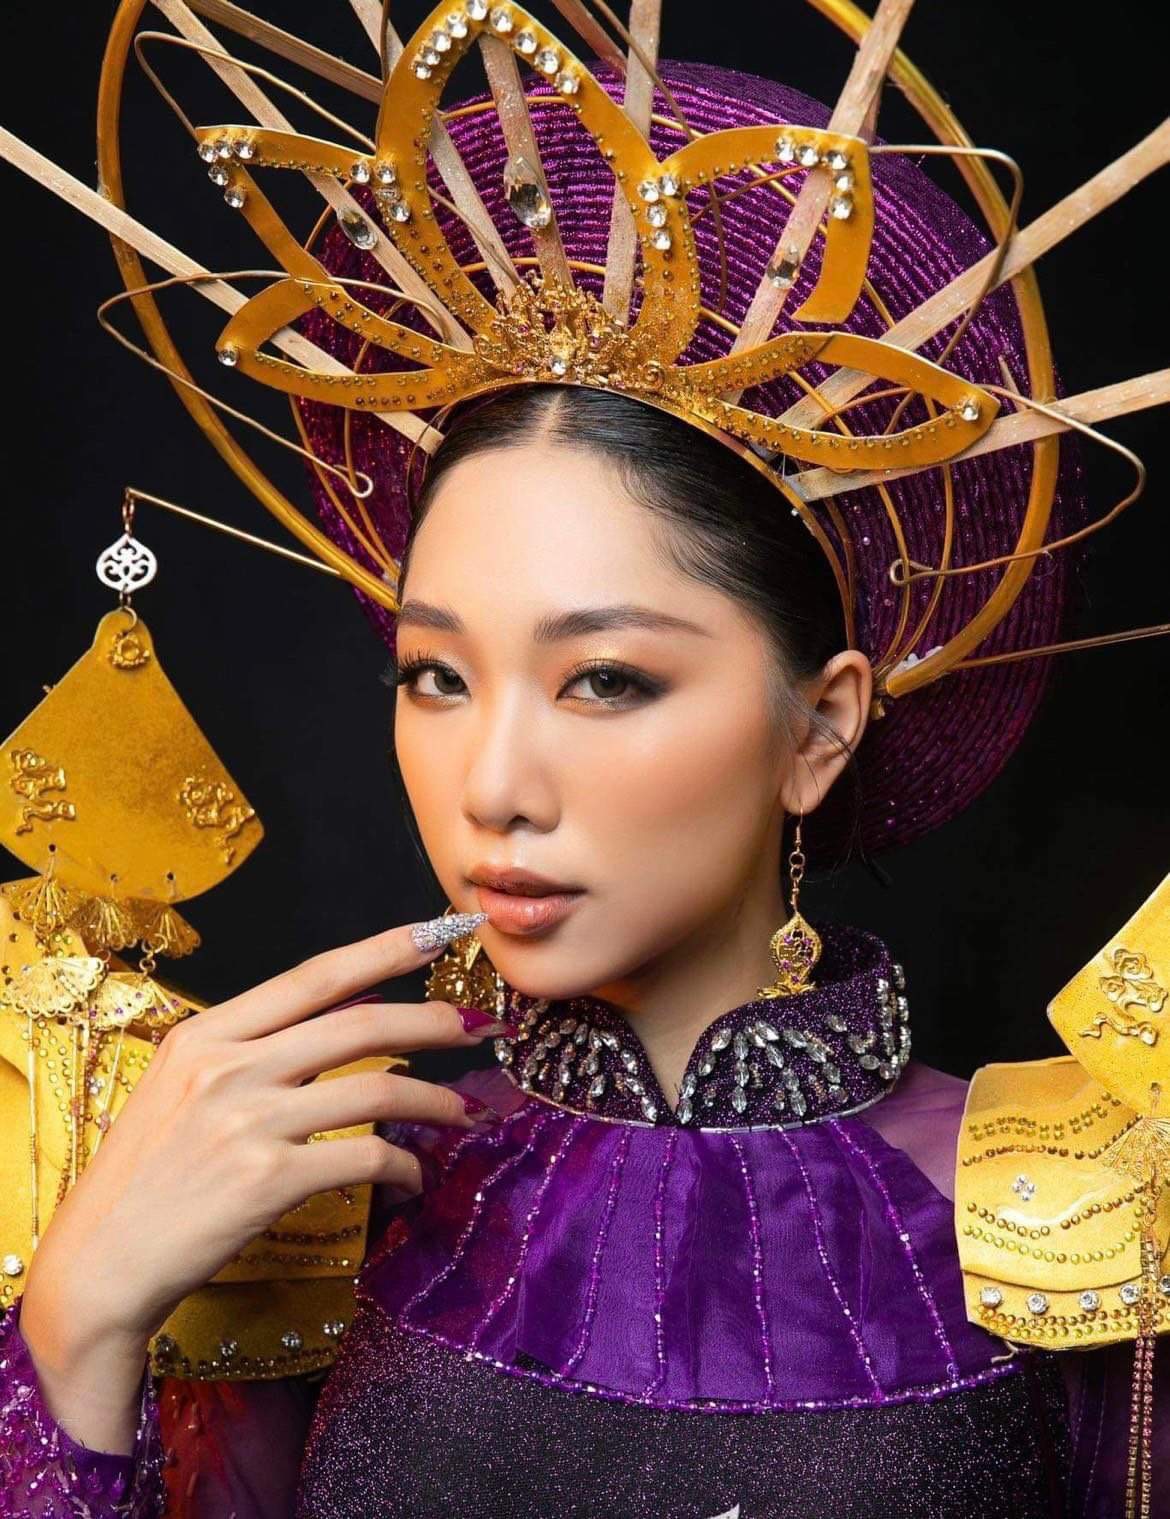 Thí sinh nhỏ tuổi nhất cuộc thi Hoa hậu Hòa Bình Việt Nam 2022, Phạm thùy dương được kỳ vọng là ứng viên sáng giá nhất cuộc thi